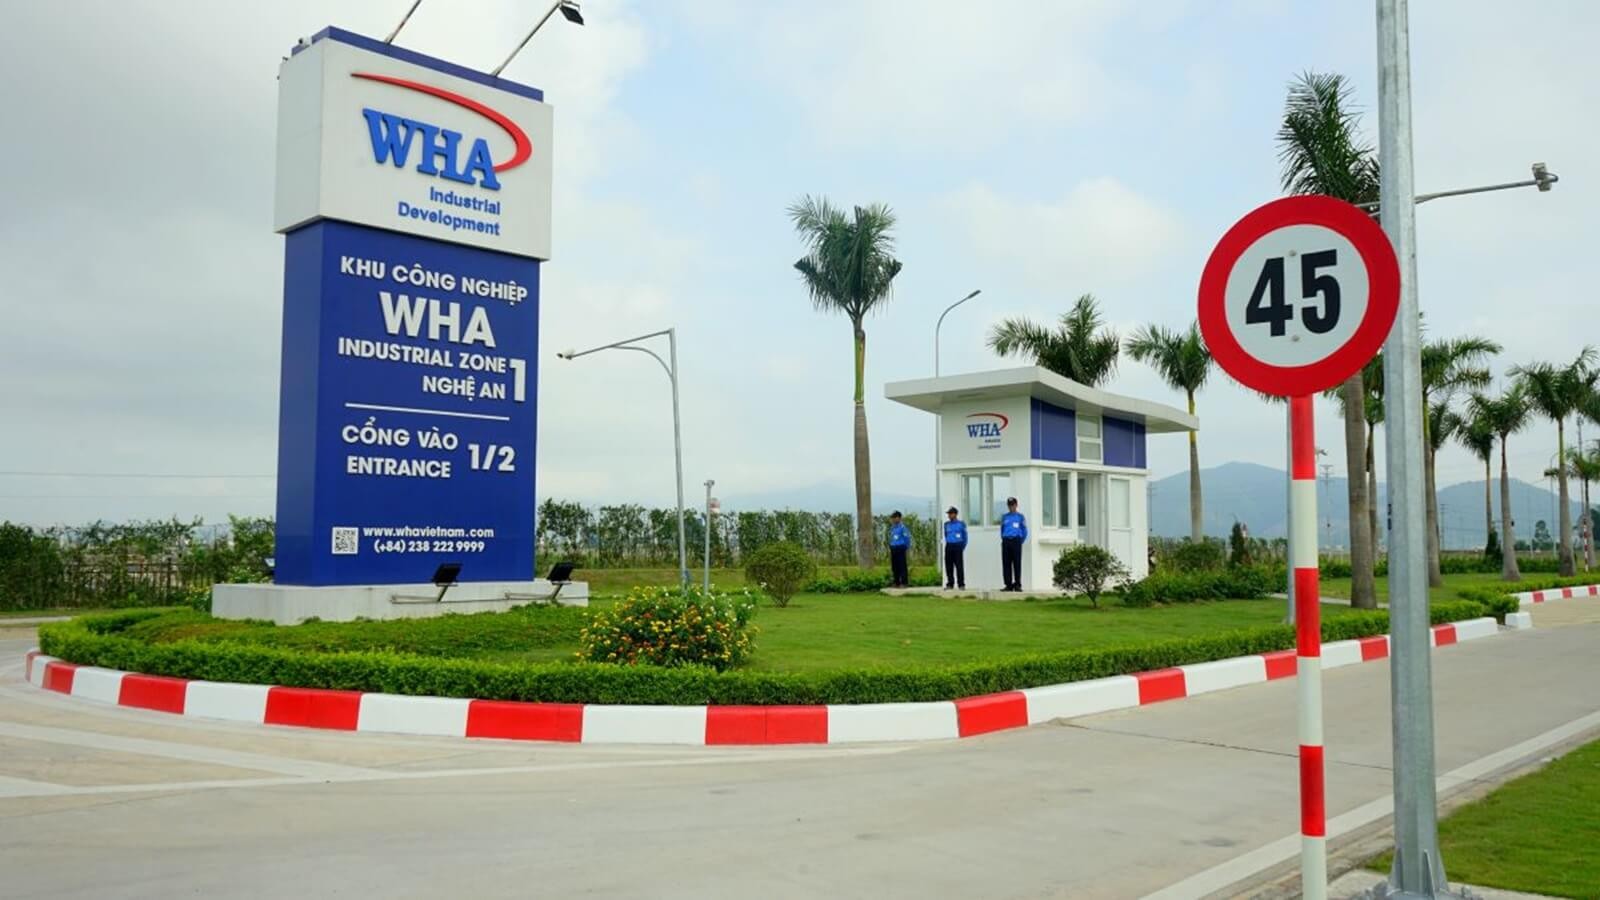 
Khu công nghiệp WHA Industrial Zone 1 tập trung nhiều dự án có vốn đầu tư trực tiếp nước ngoài.
